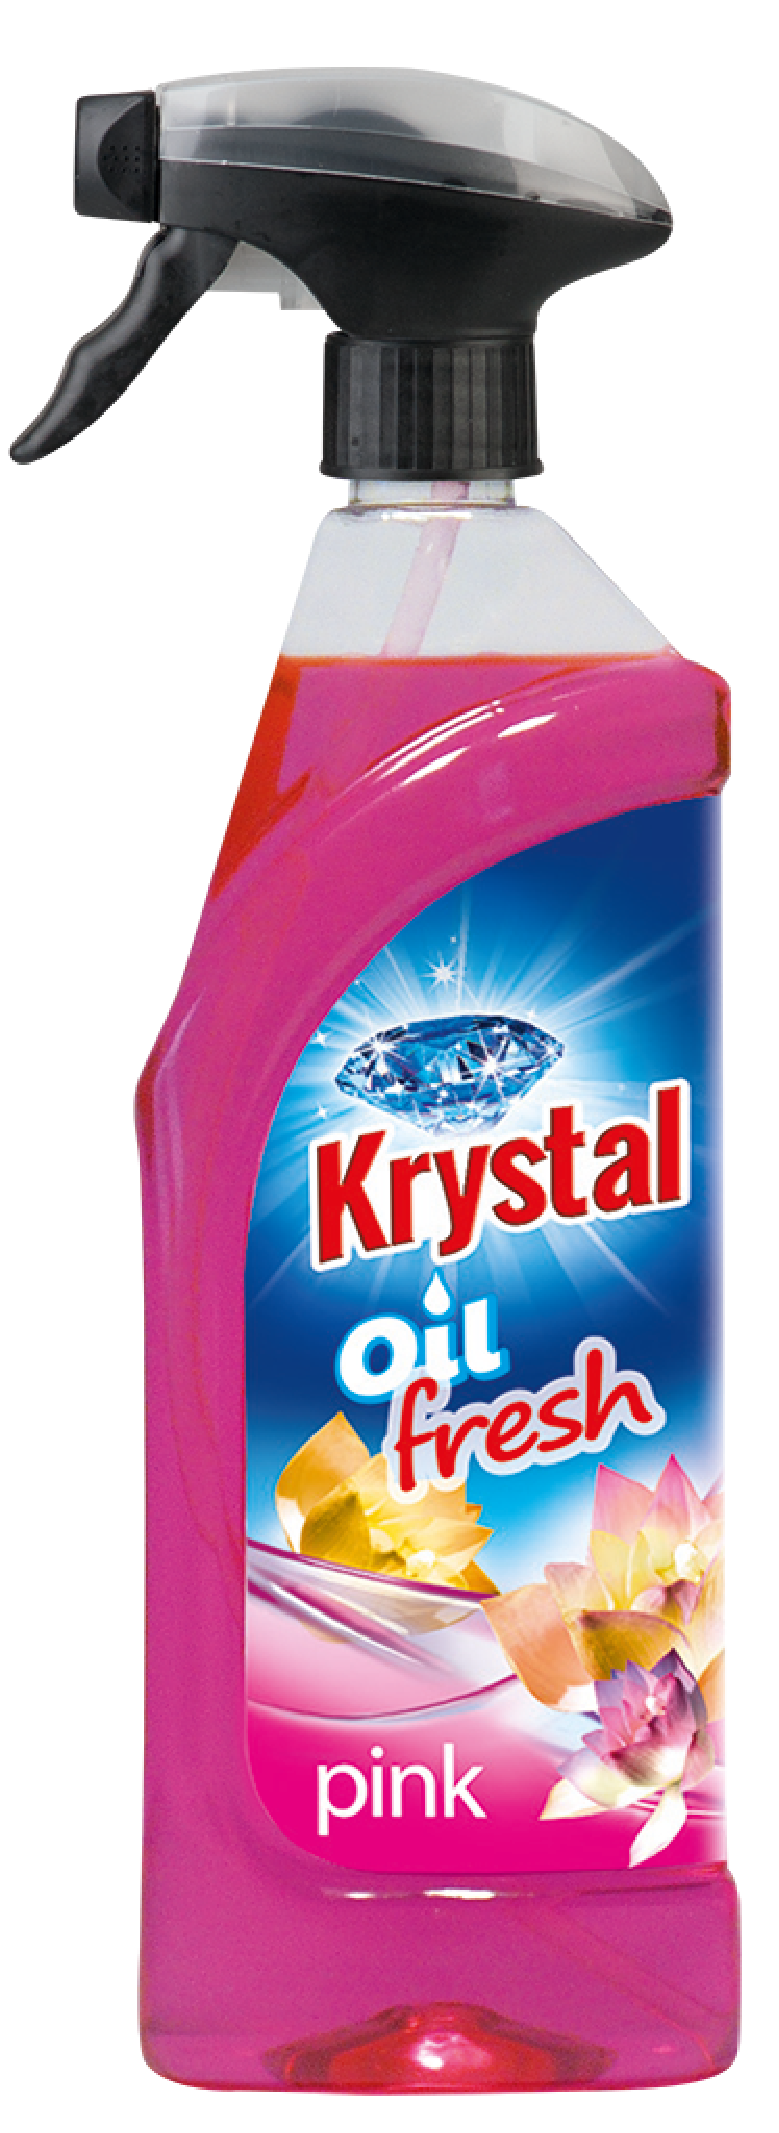 Osvěžovač vzduchu Krystal 750ml olejový-pink